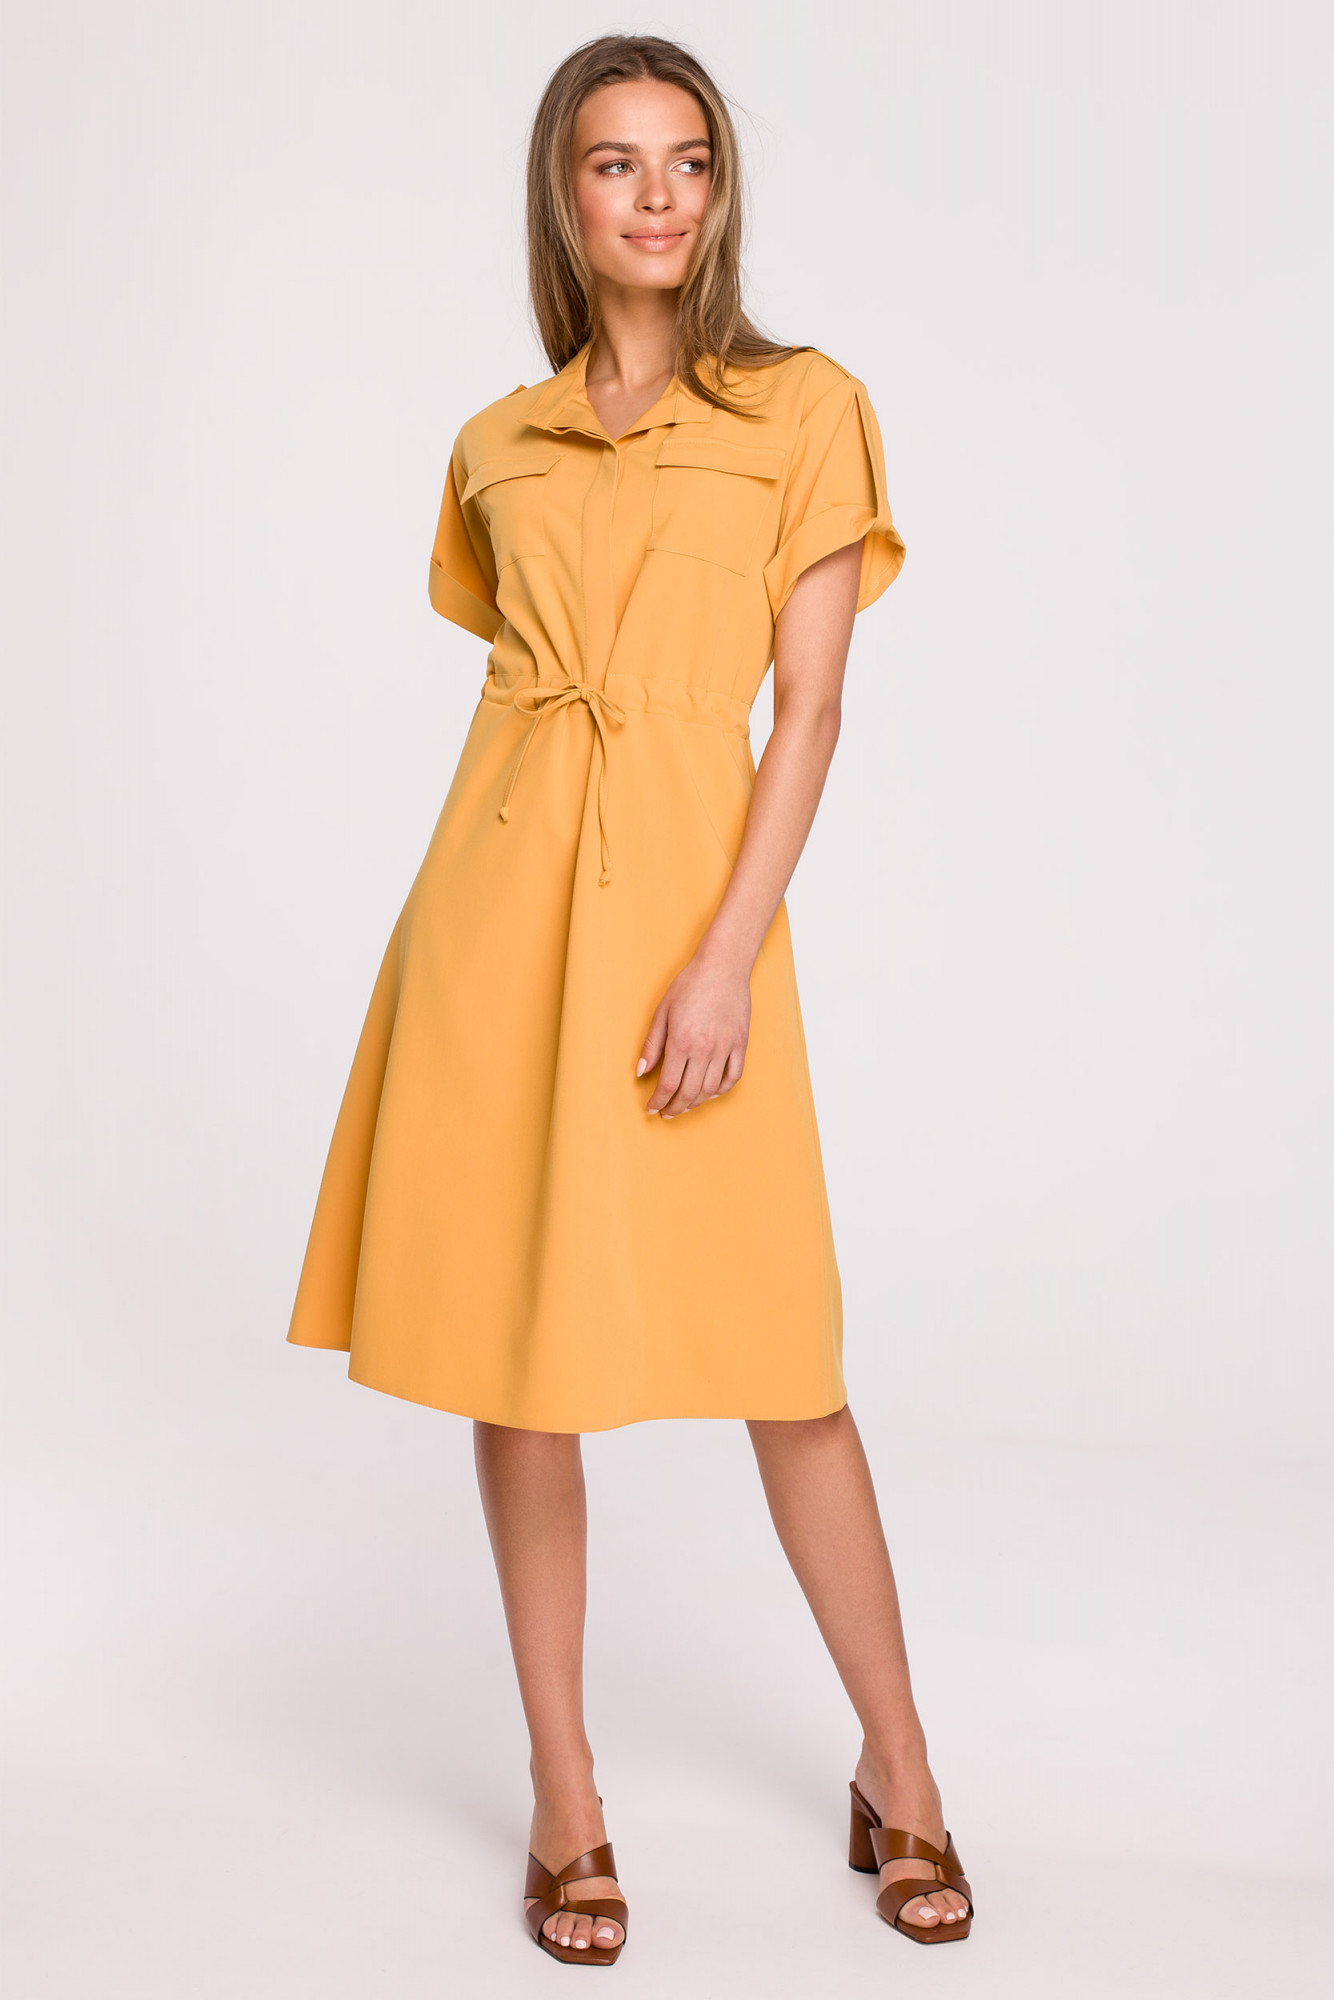 Dámské košilové šaty Yellow S298 - Stylove žlutá S